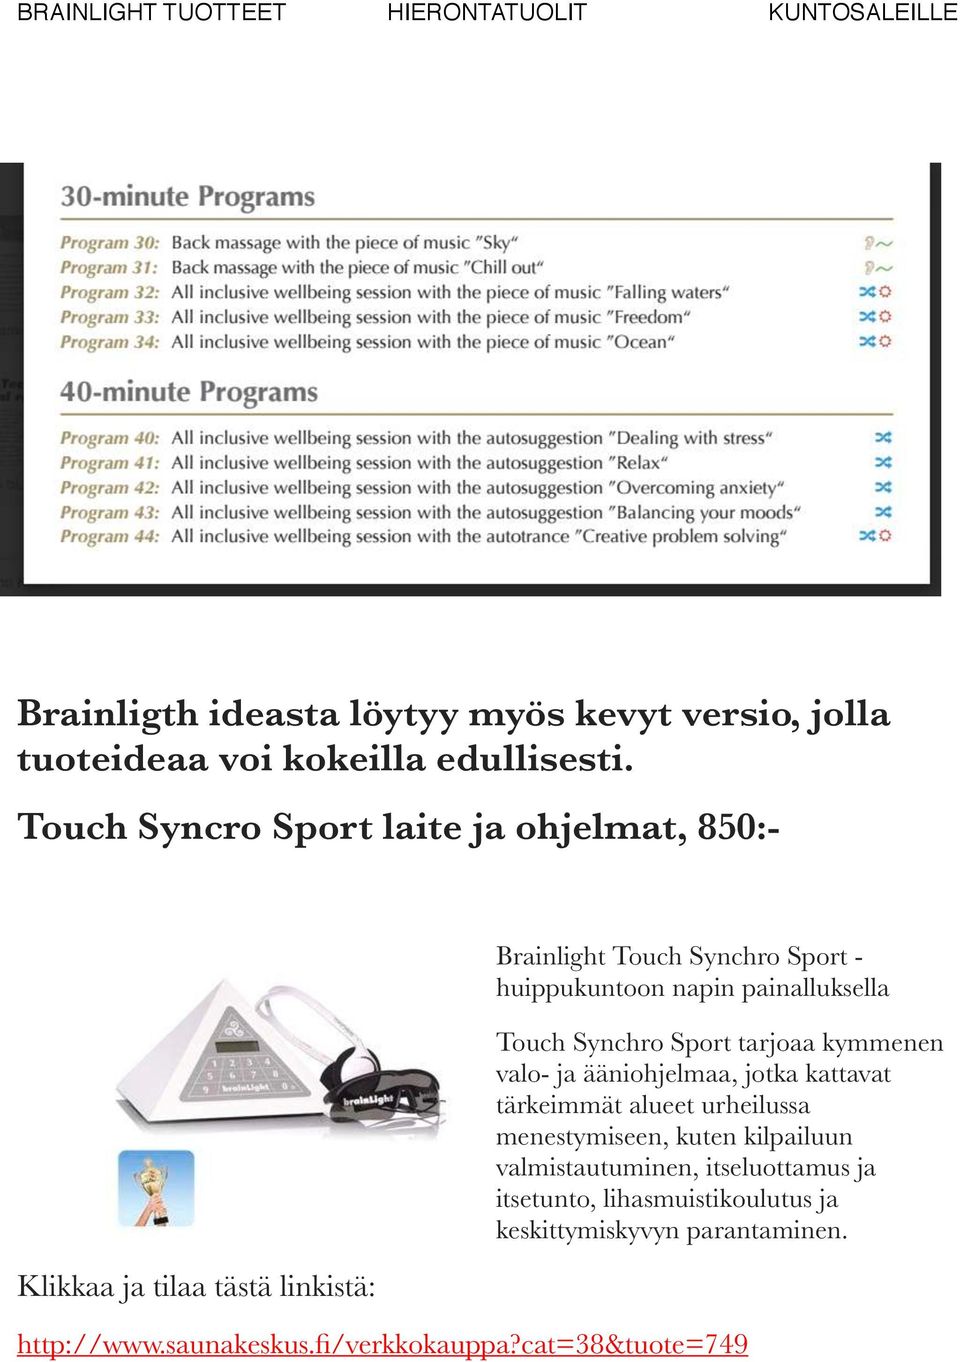 painalluksella Touch Synchro Sport tarjoaa kymmenen valo- ja ääniohjelmaa, jotka kattavat tärkeimmät alueet urheilussa